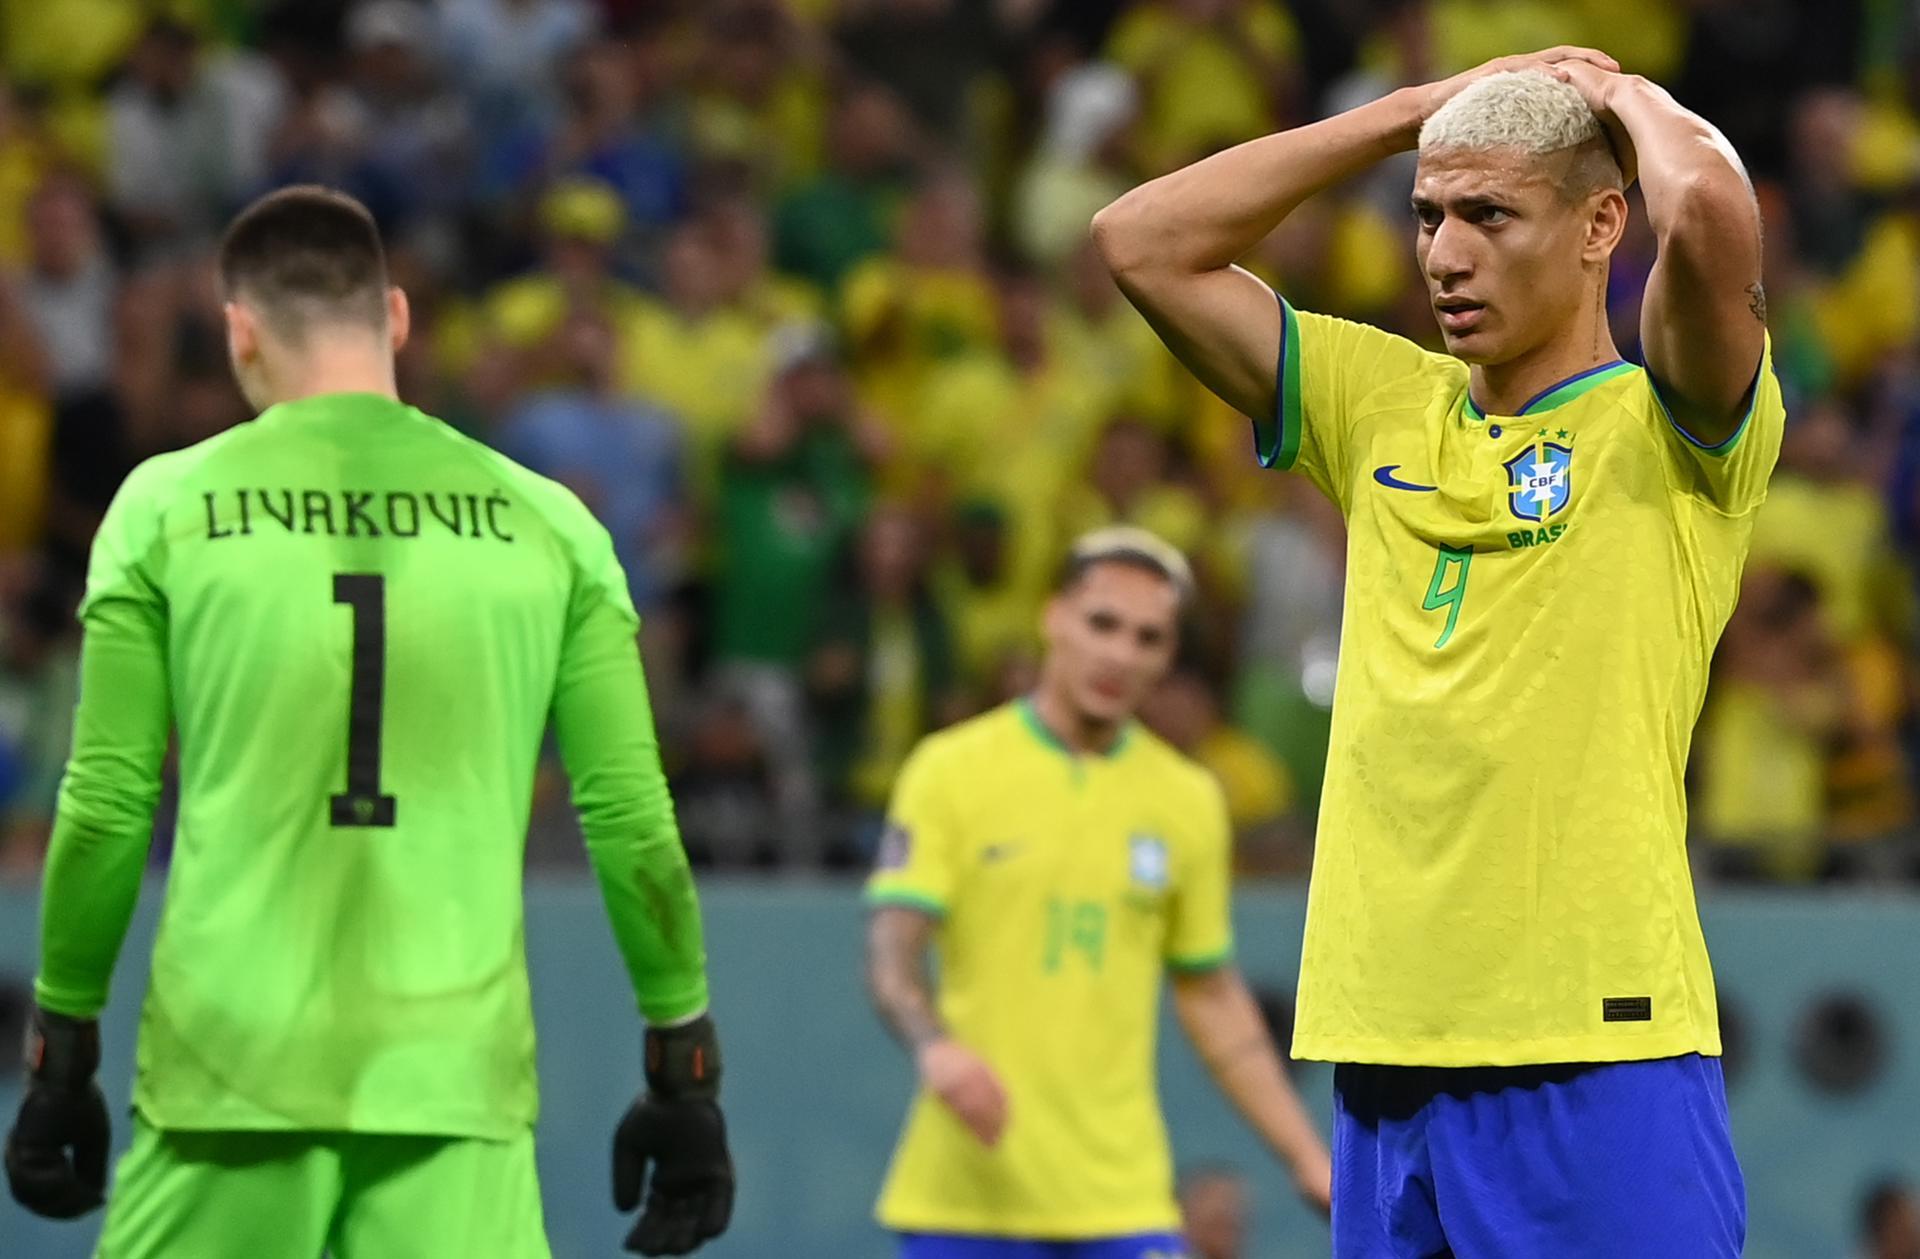 Eliminação do Brasil na Copa do Mundo gera memes nas redes sociais